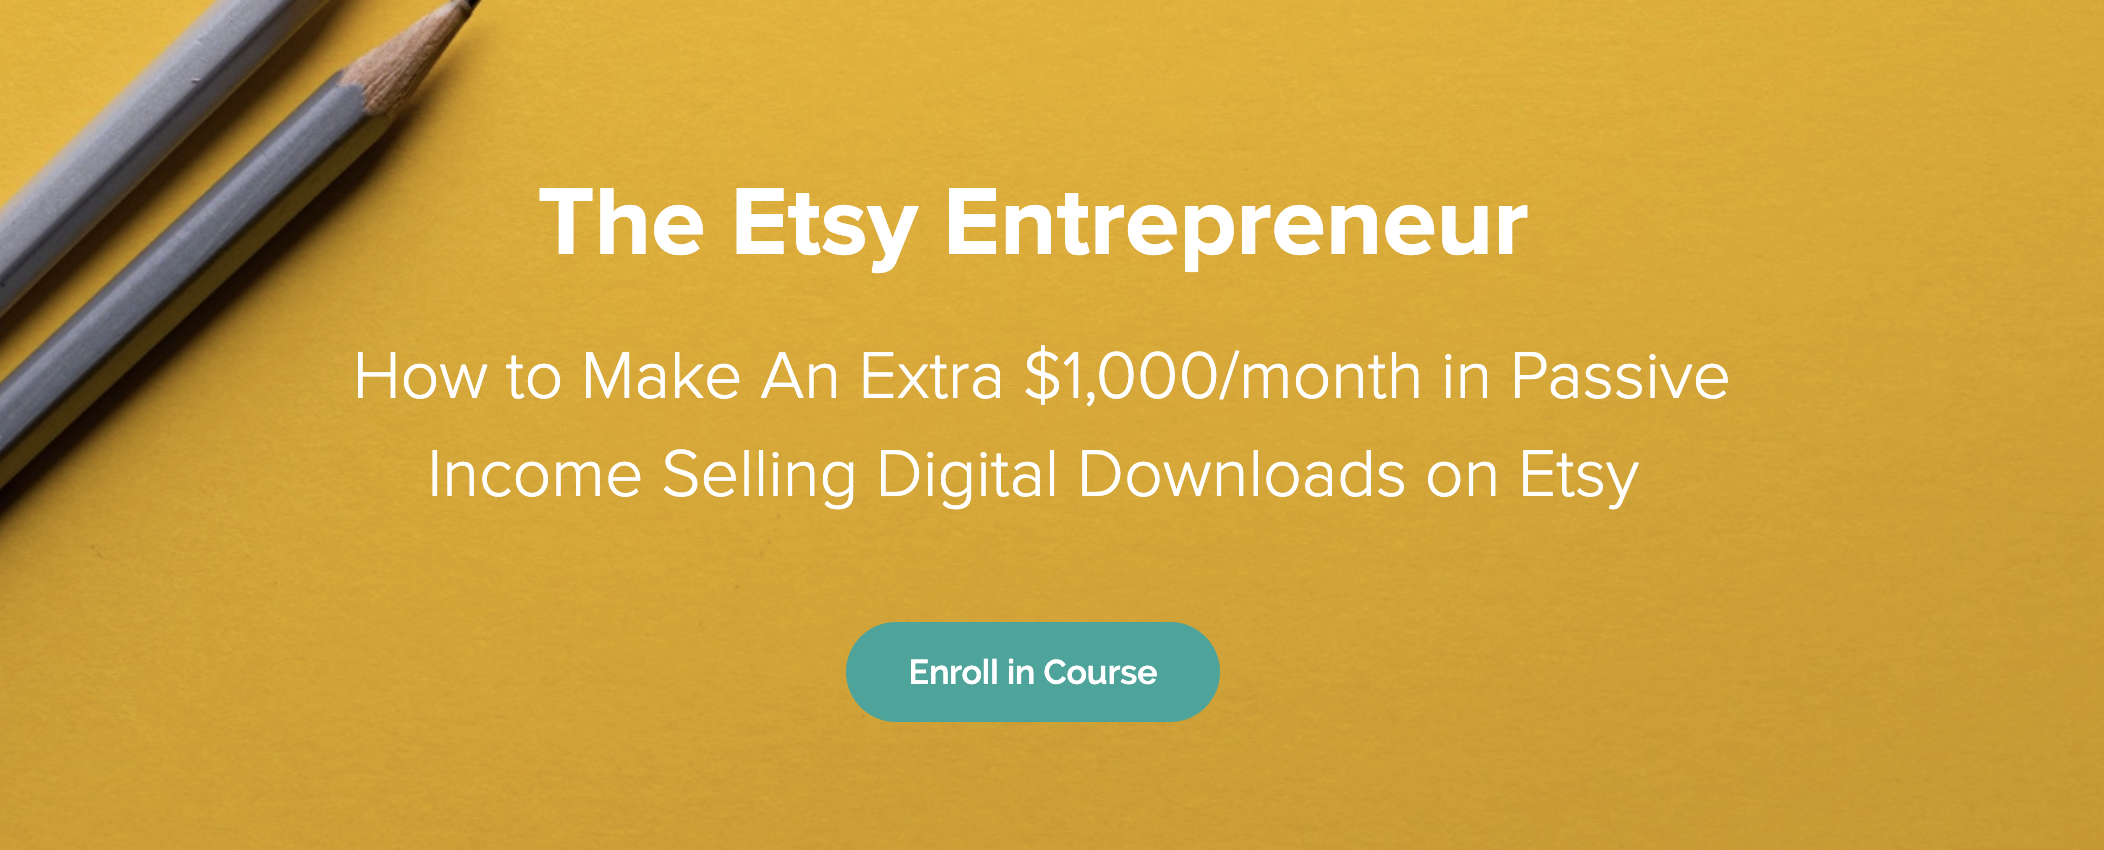 etsy entrepreneur